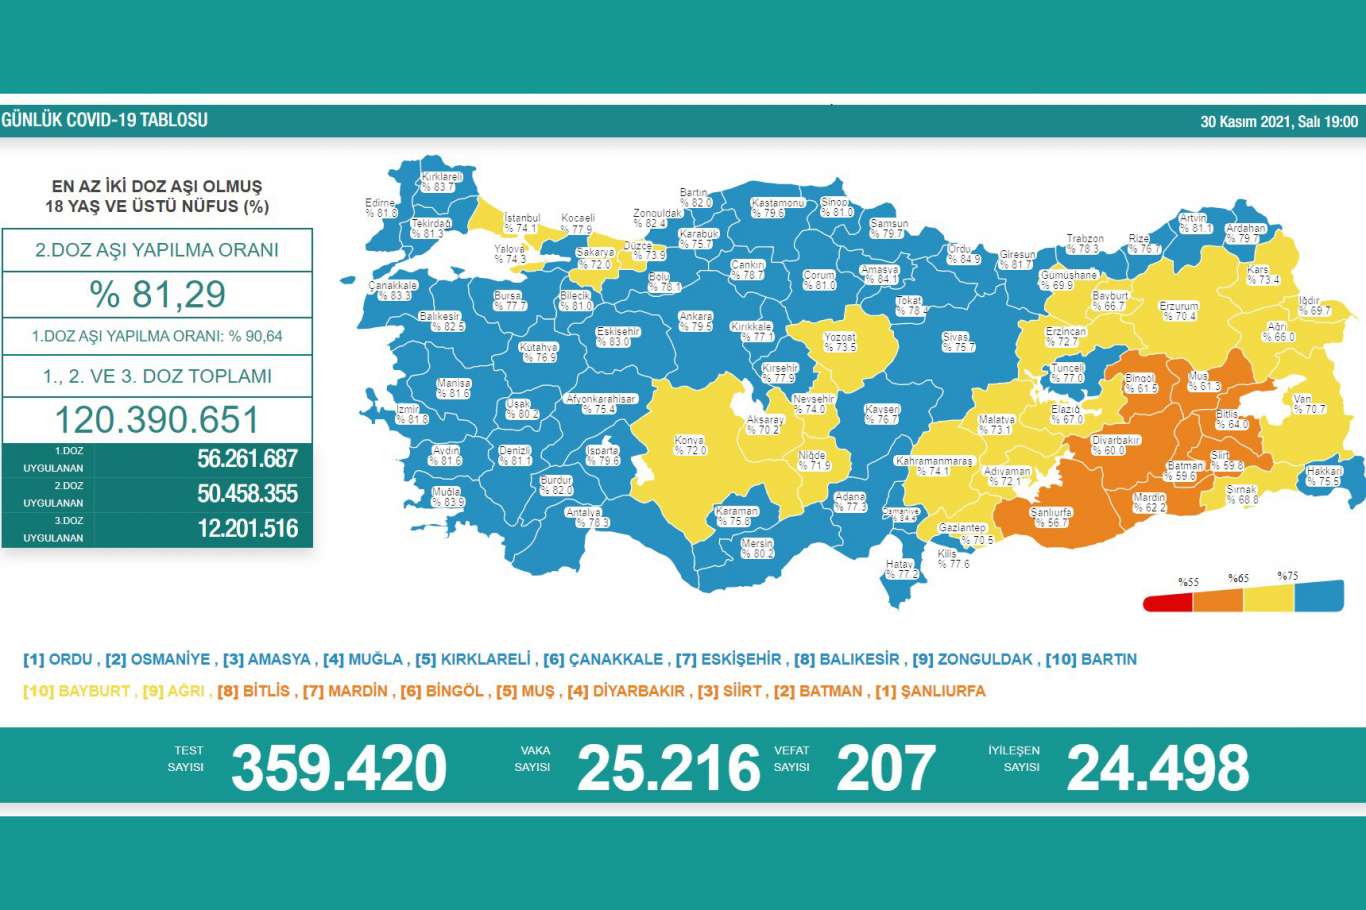 Türkiyede Covid-19 nedeniyle 207 kişi vefat etti, 25 bin 216 yeni vaka tespit edildi